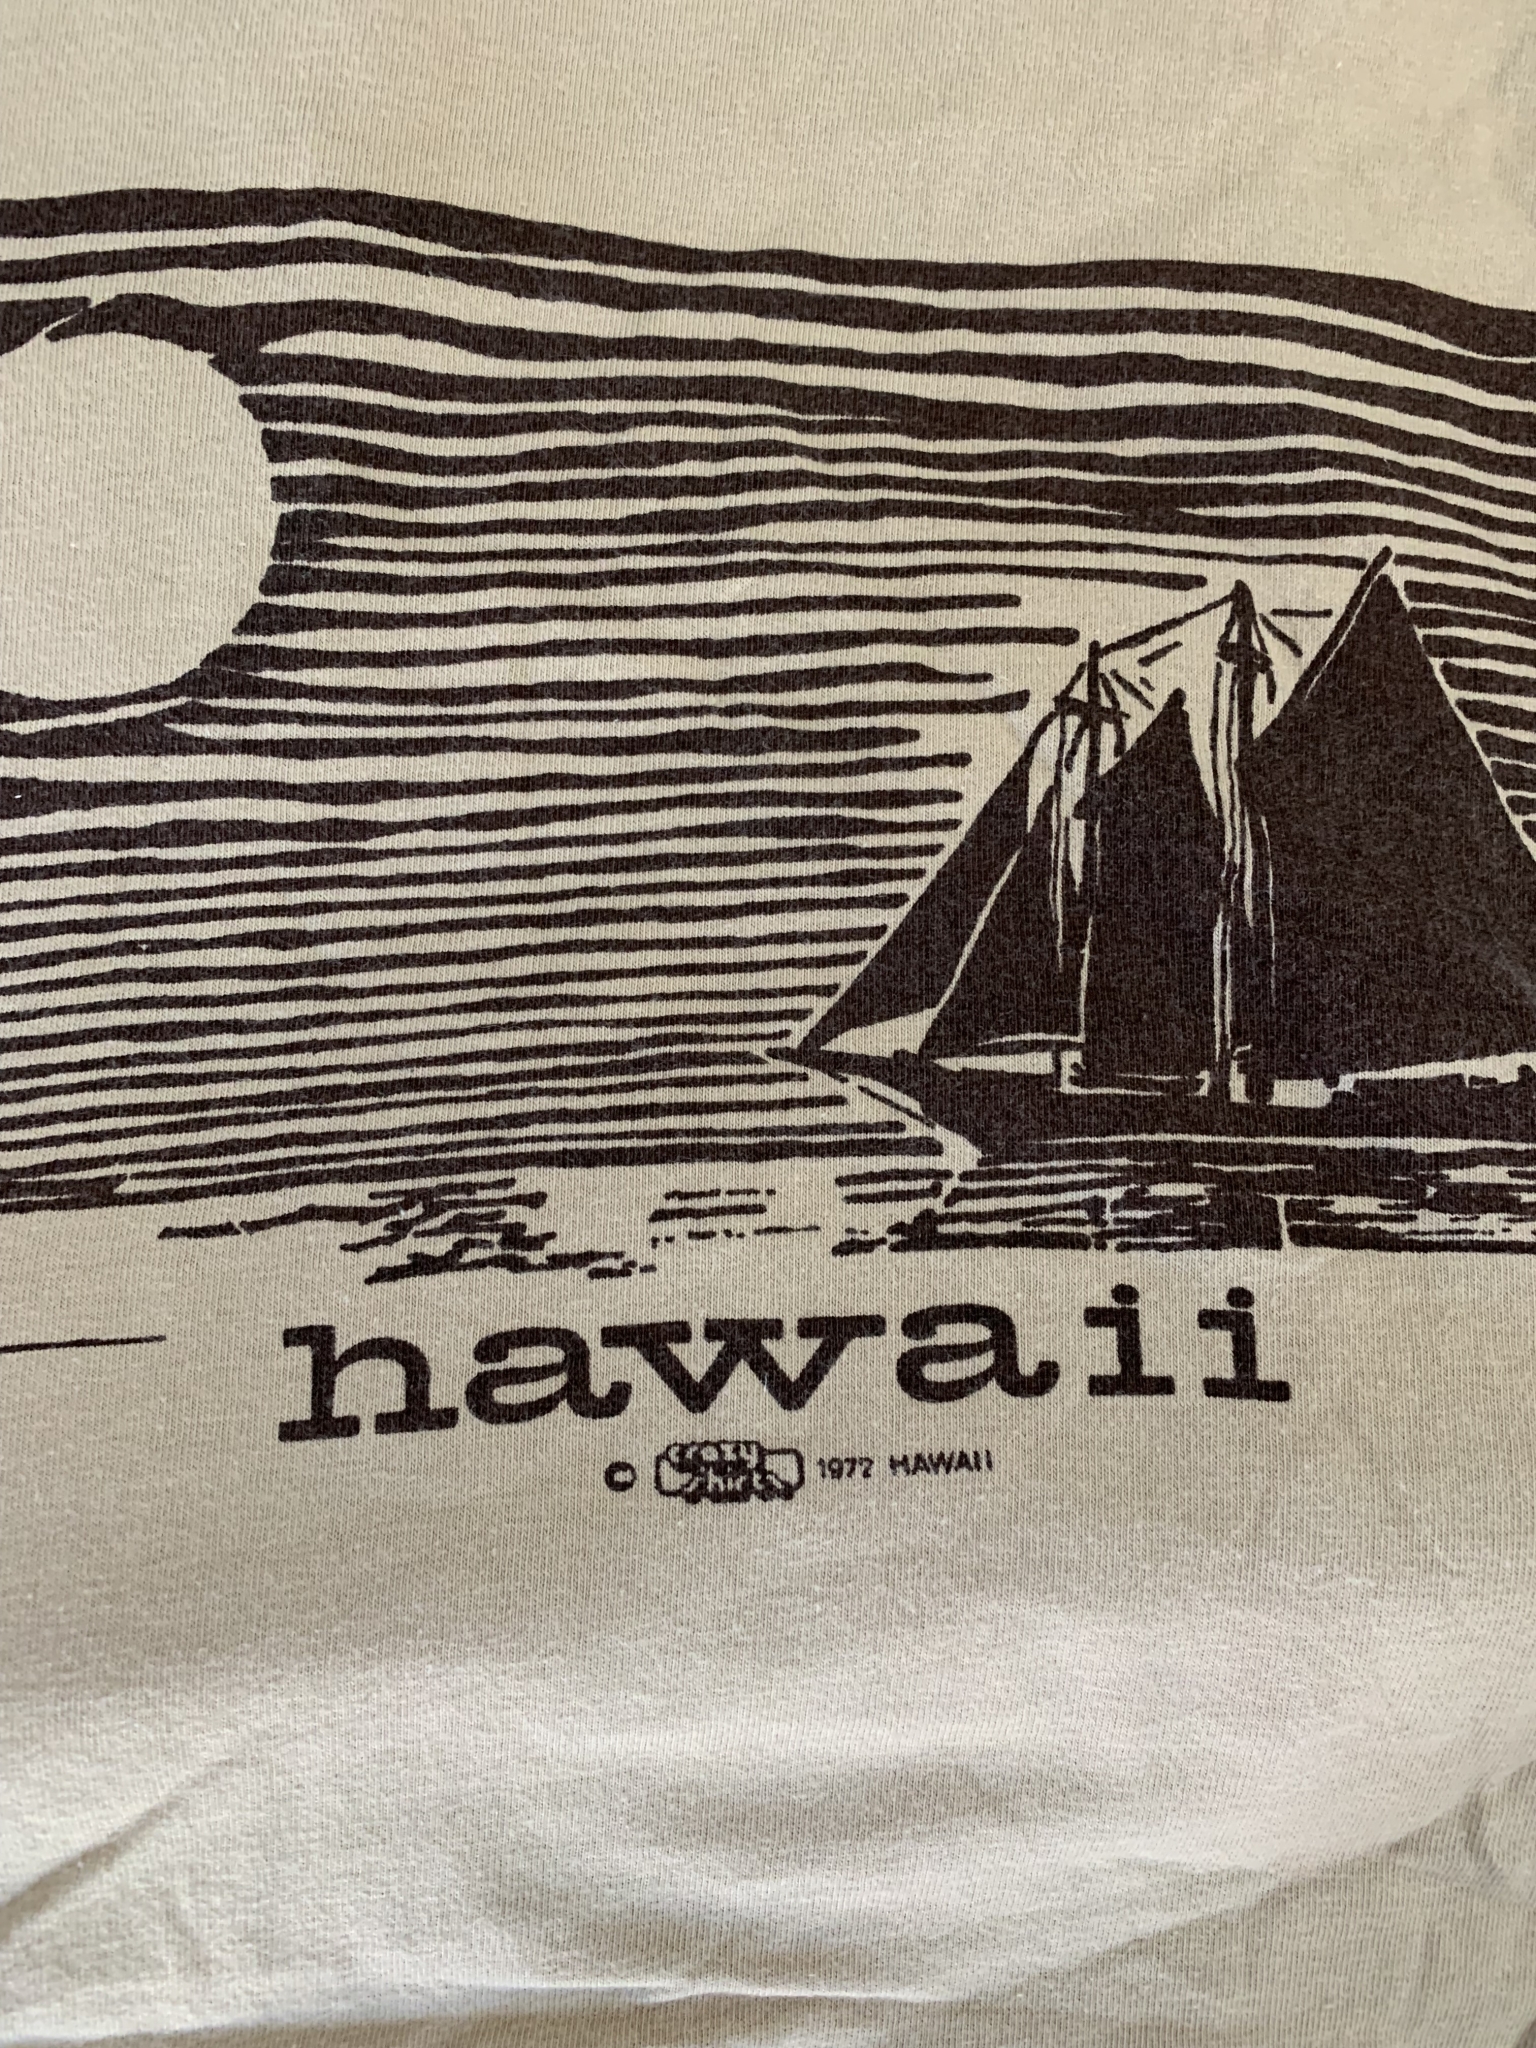 vintage 1972 hawaii sunset sailing boat crazy shirts t-shirt